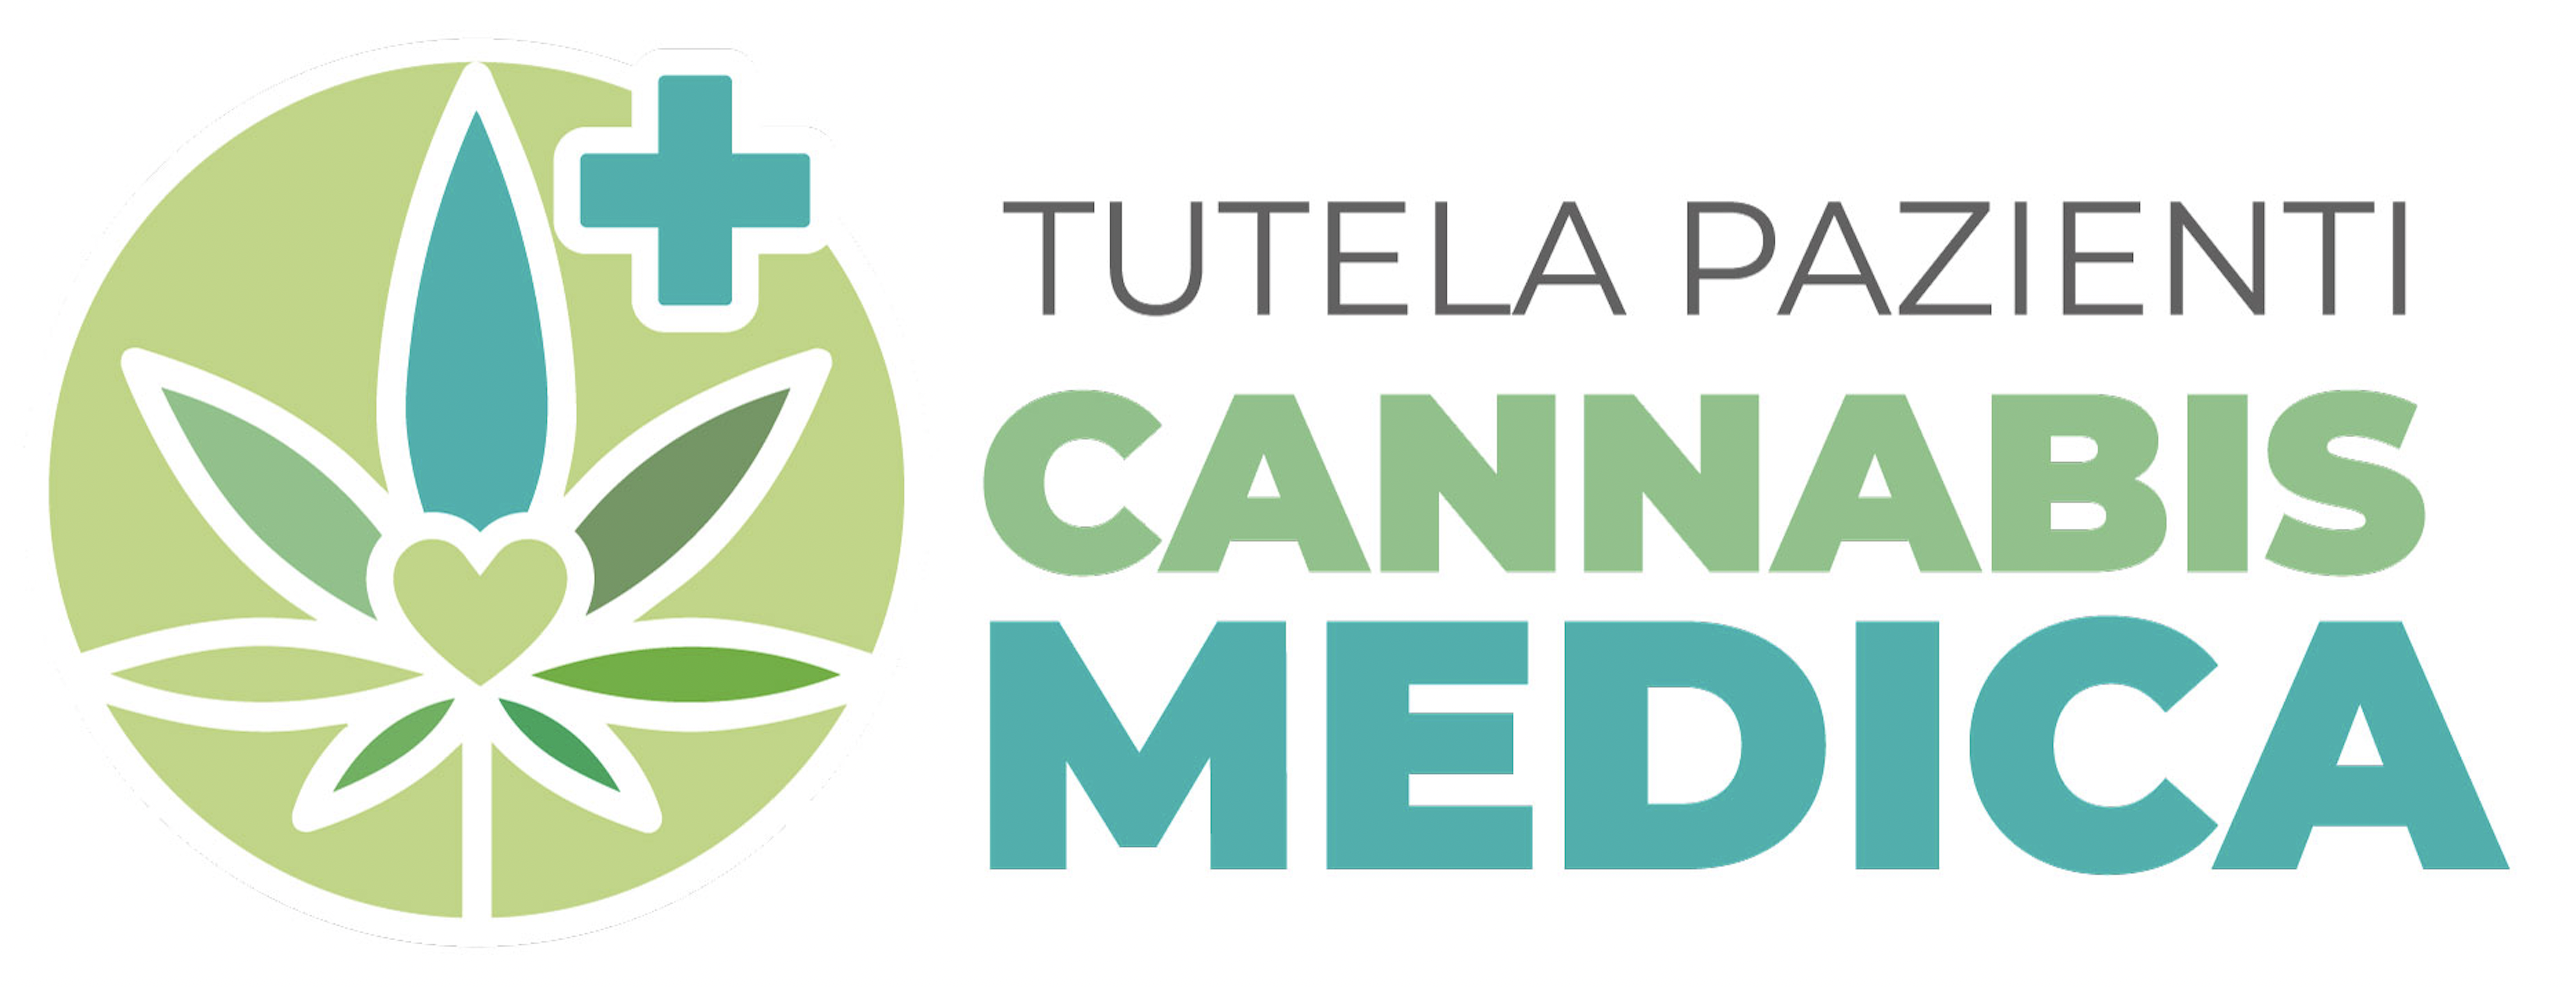 Schutz von Patienten mit medizinischem Cannabis